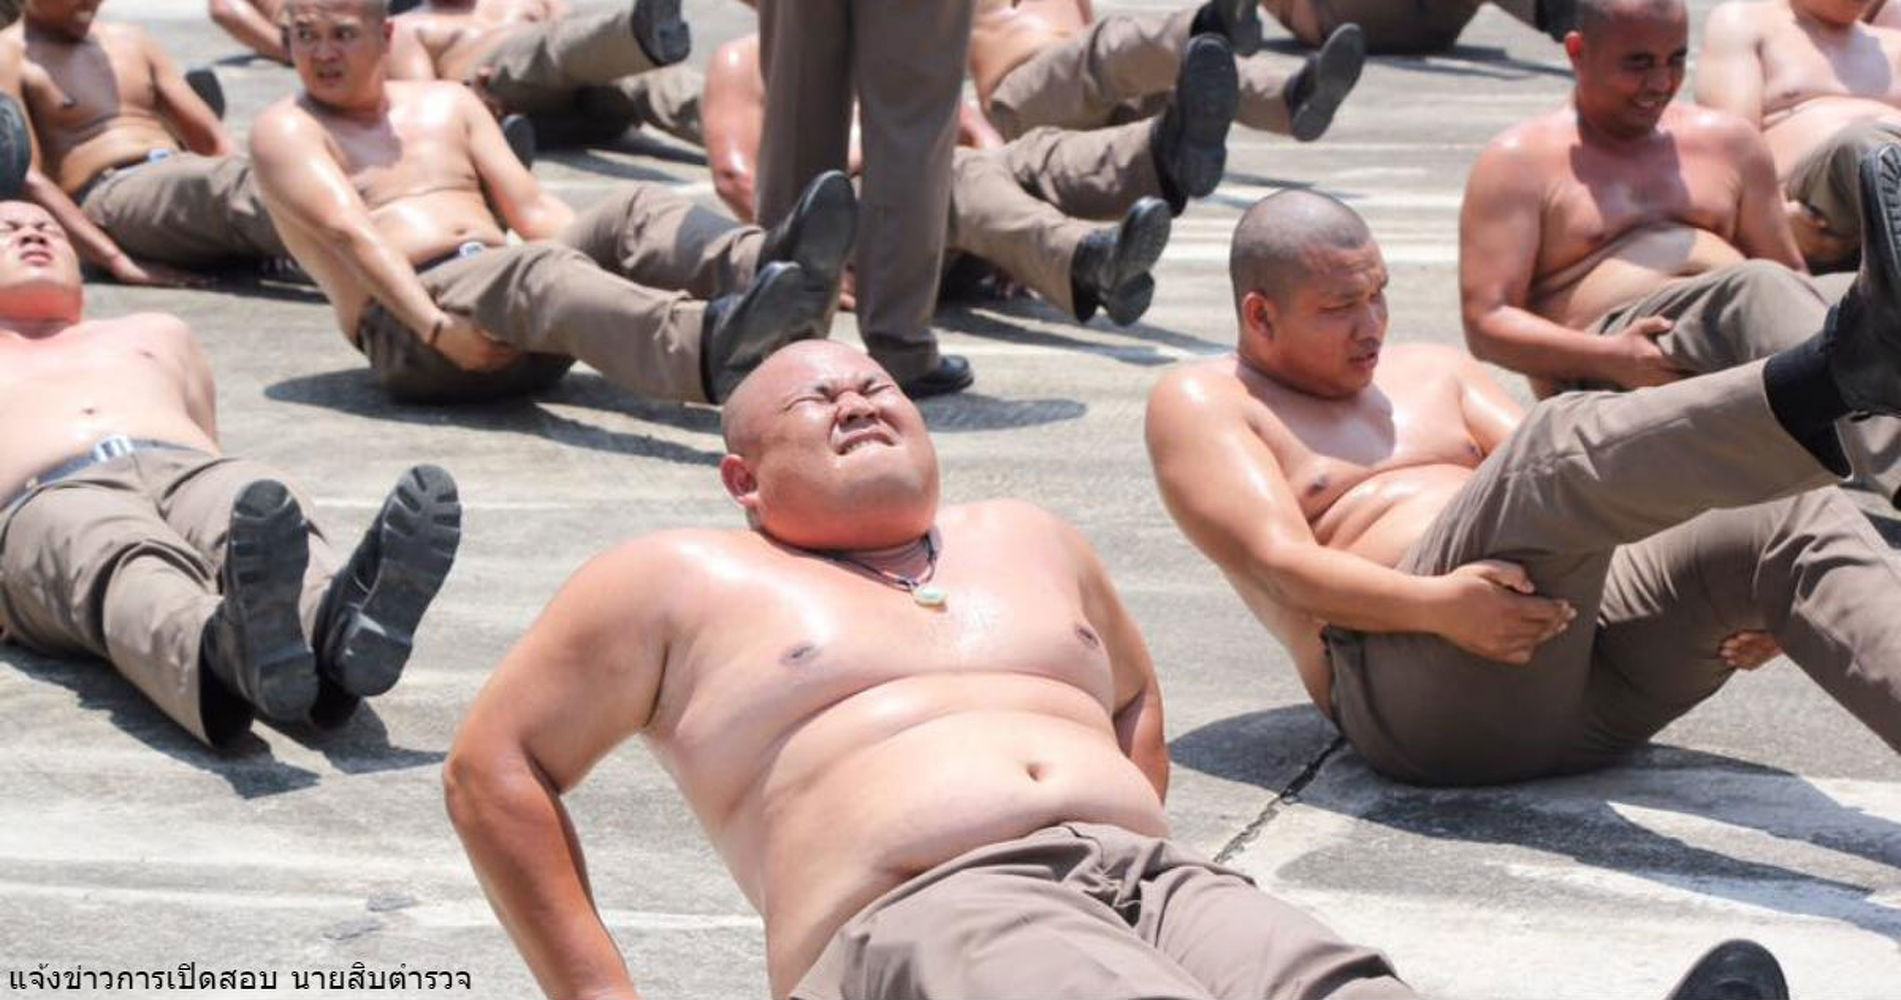 В Таиланде толстых полицейских отправили в лагерь - сгонять лишний вес — Today.kg